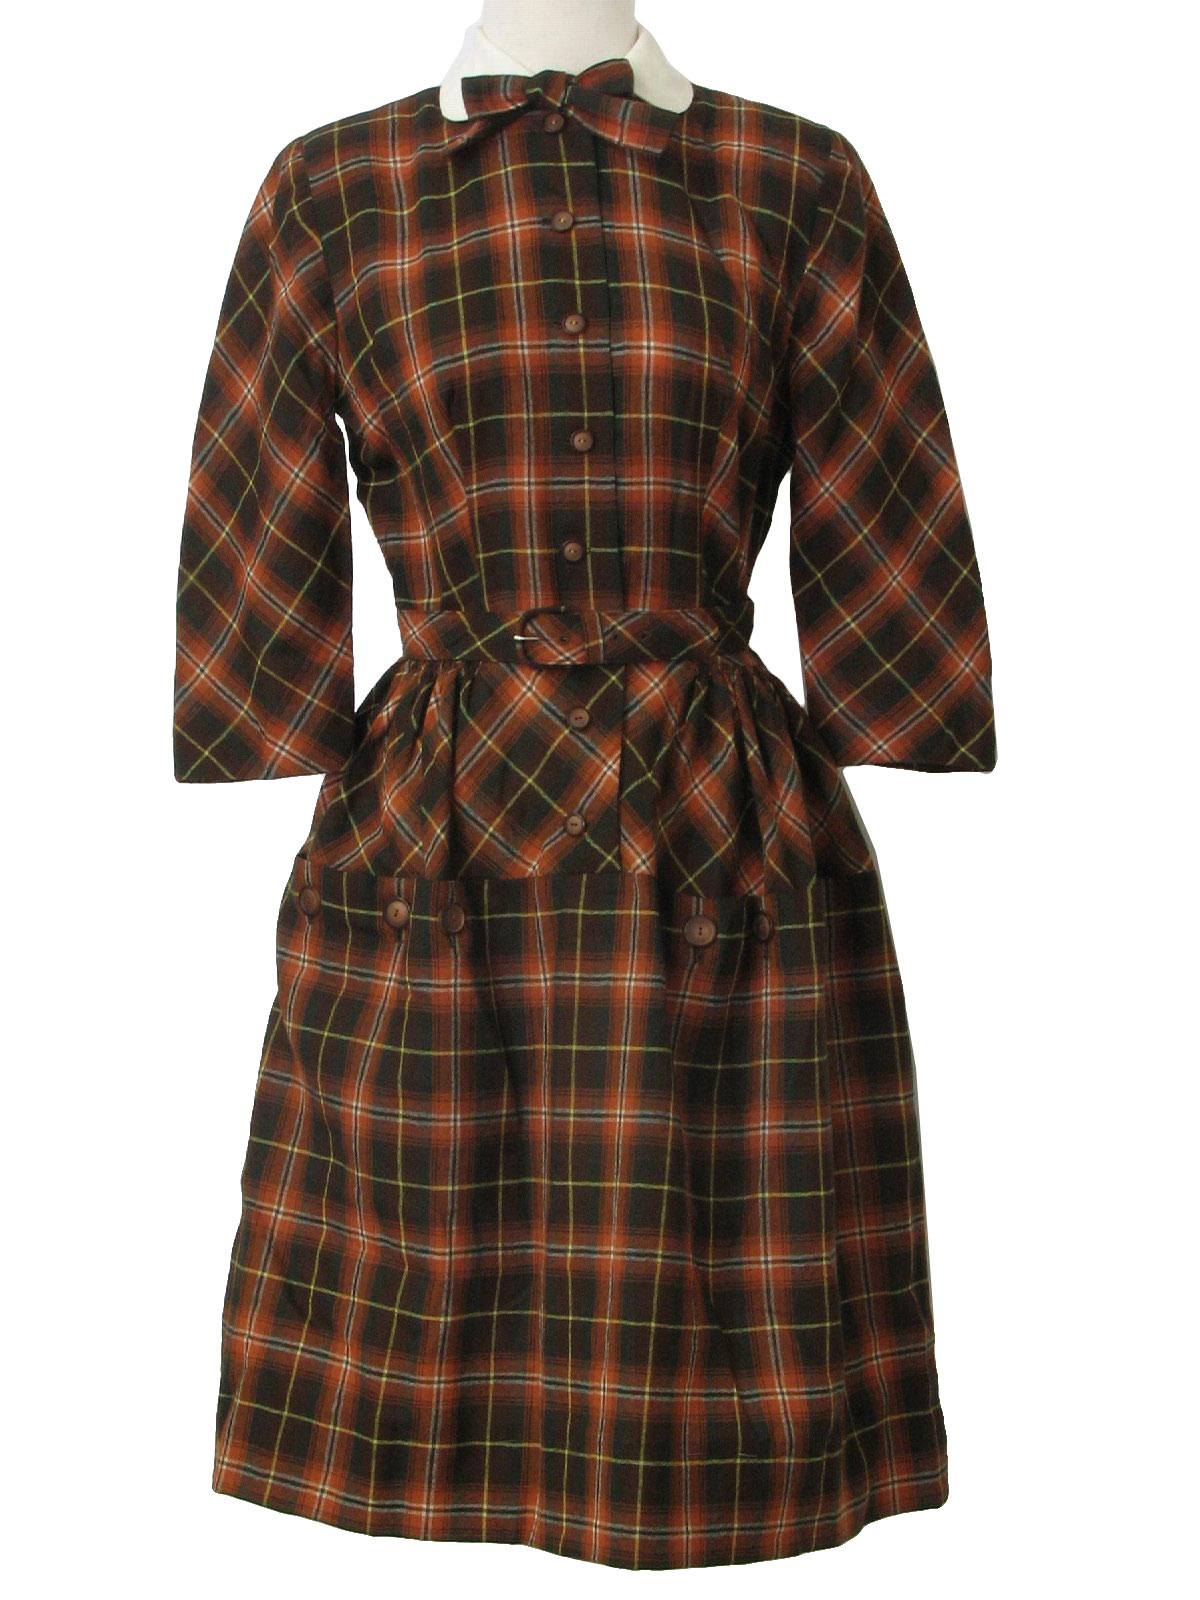 Doris Dodson Juniors 1940s Vintage Dress: Late 40s -Doris Dodson ...